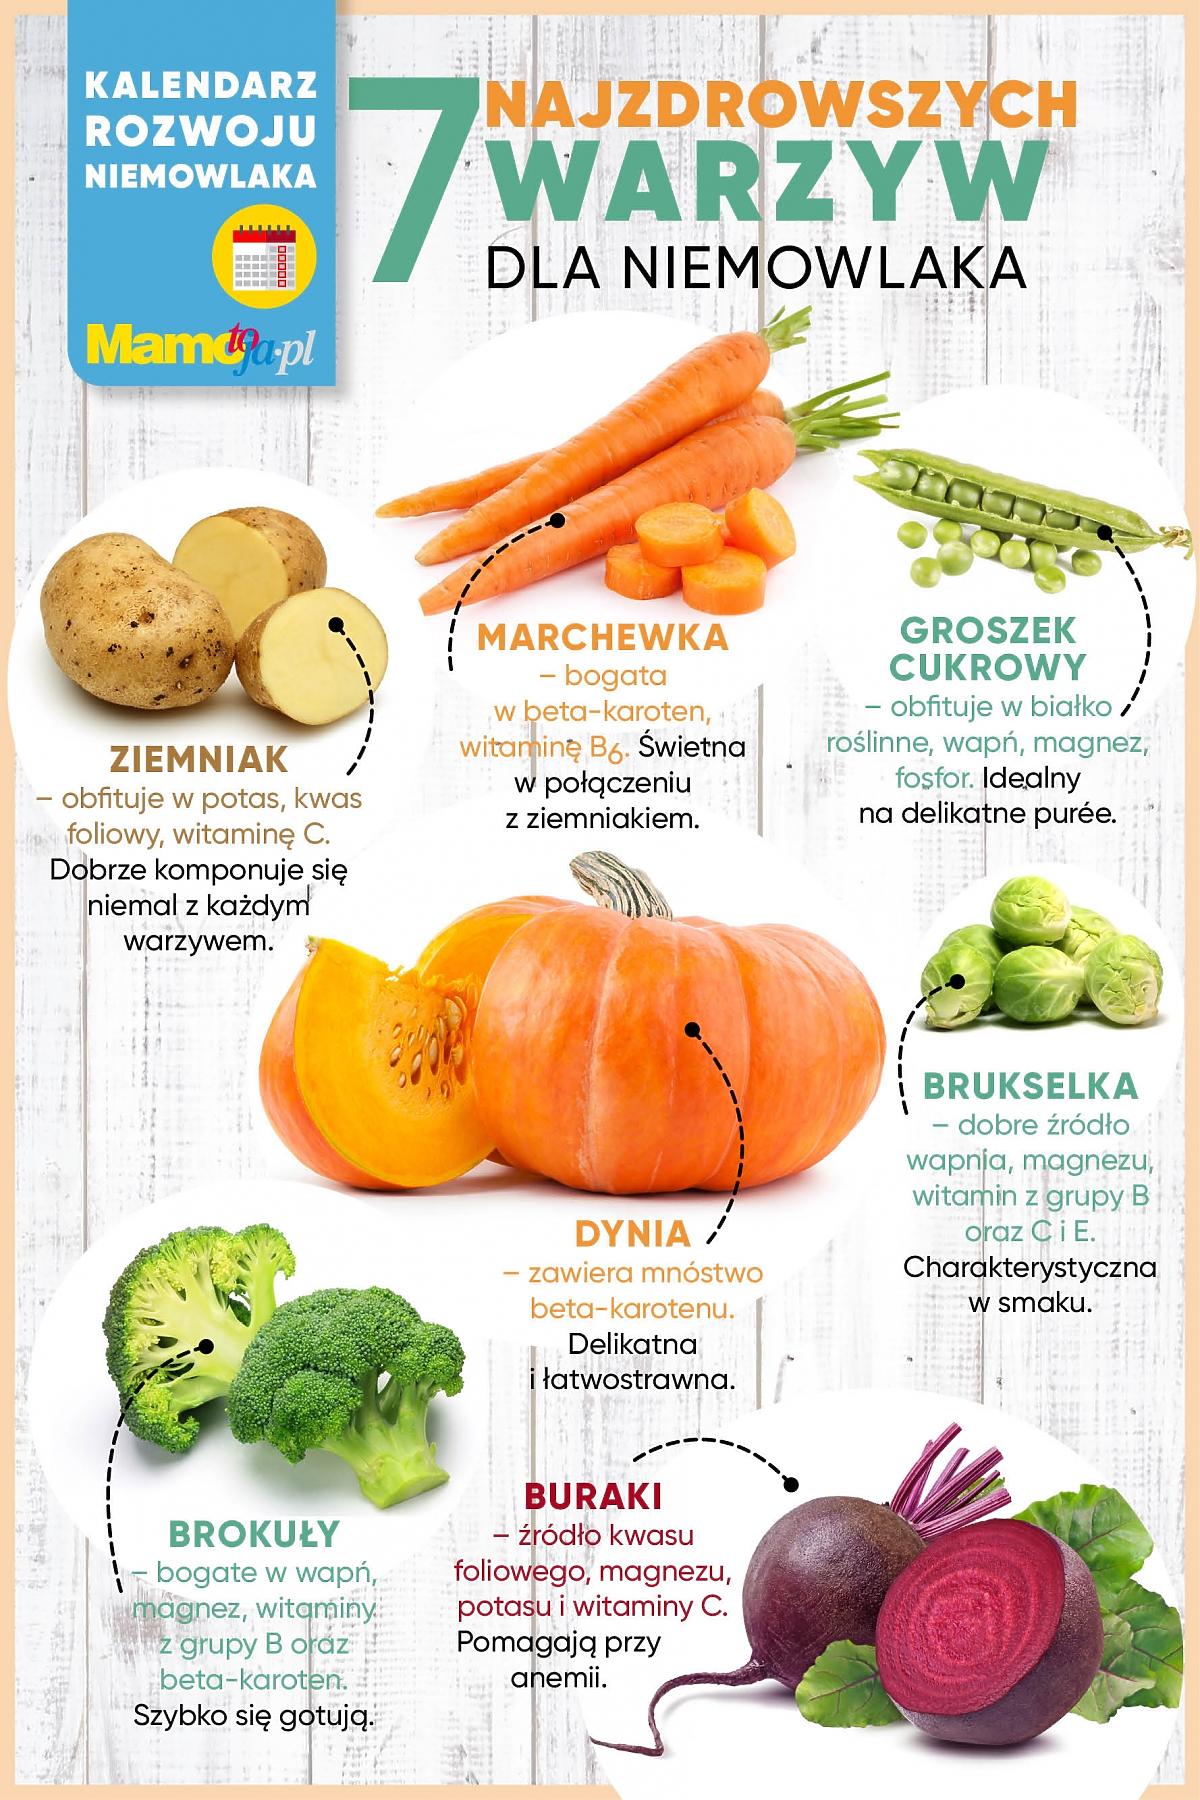 Warzywa dla niemowlaka infografika